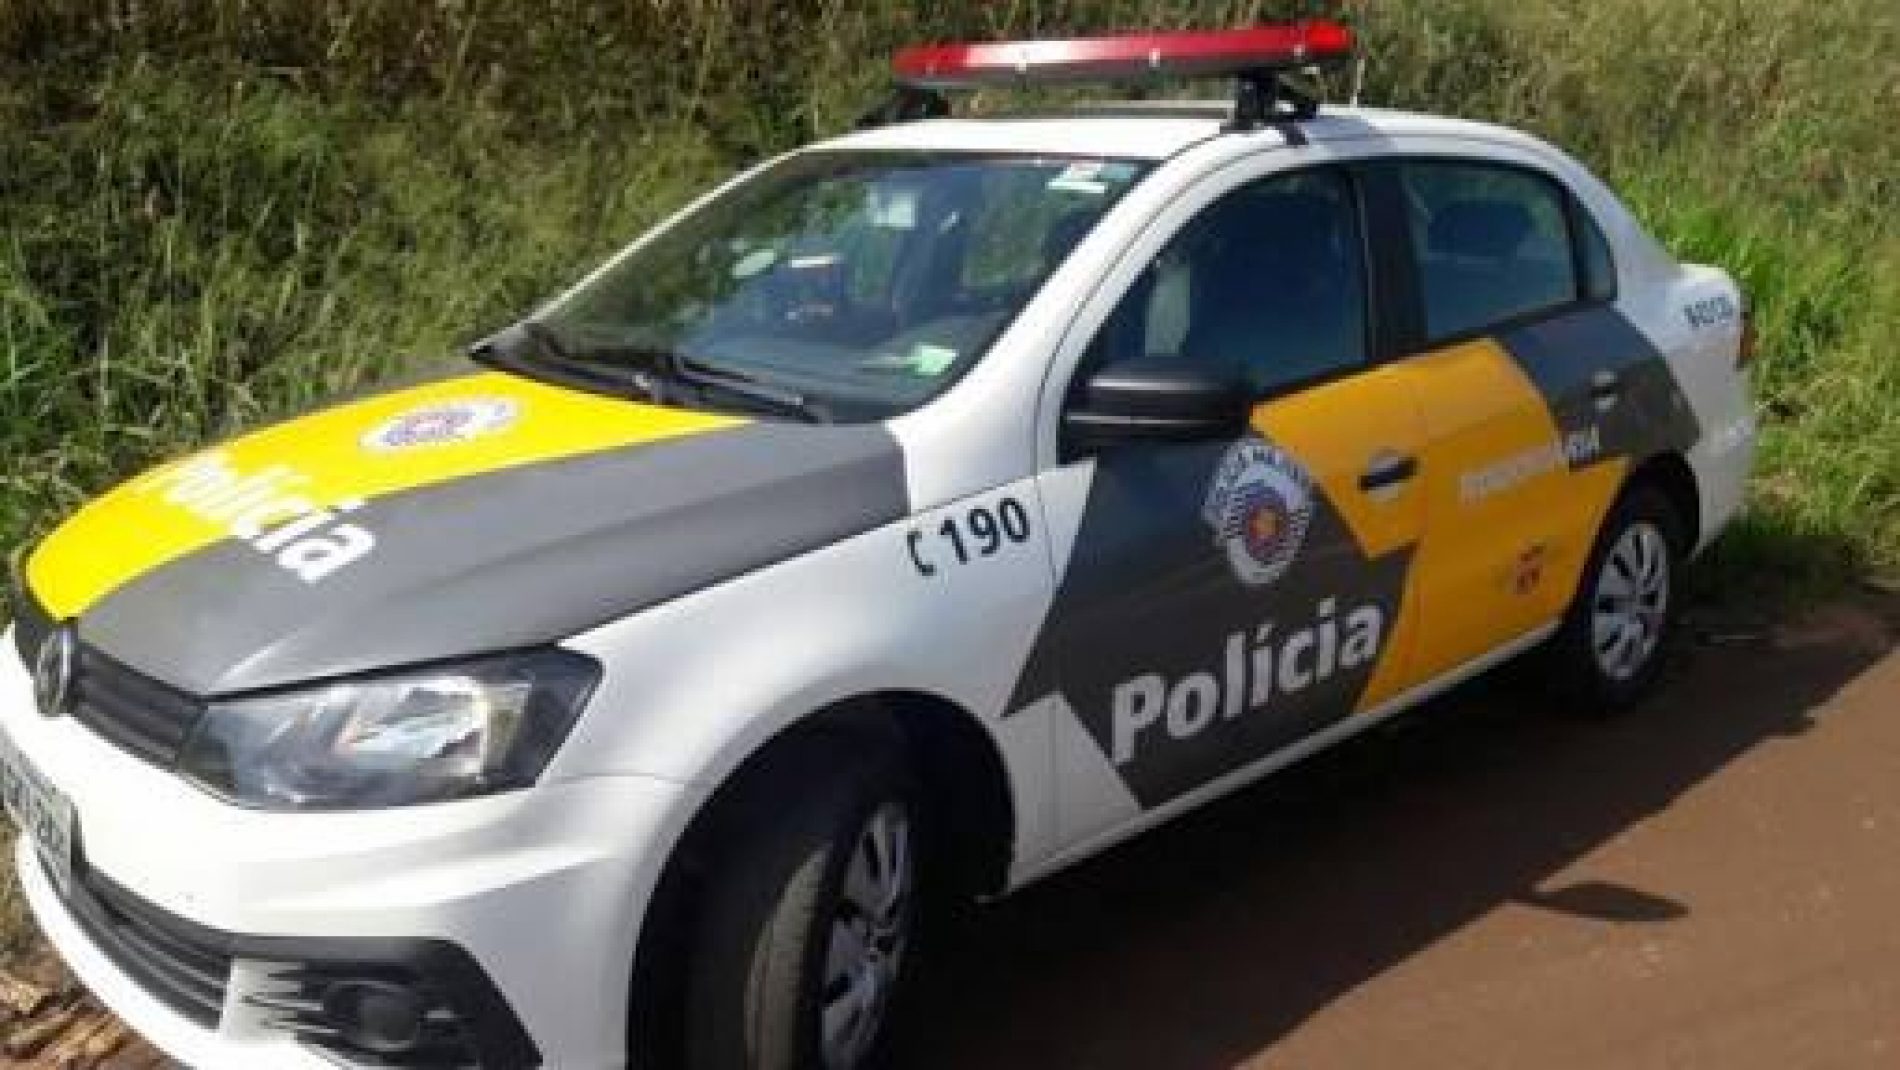 BARRETOS: Policia rodoviária prende jovem com drogas e munições depois de tentativa de fuga pela rodovia e passagem indevida pelo pedágio